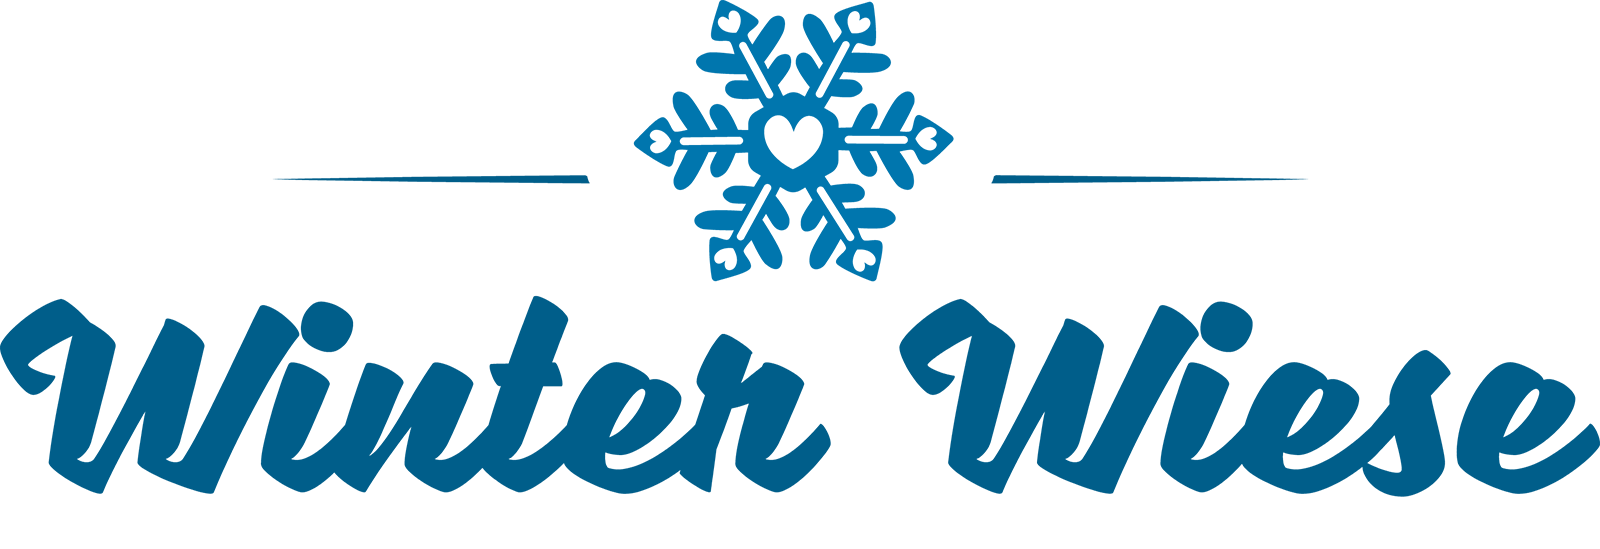 Wiese Logo - Winter Wiese Logo - Volksmusiknews.at